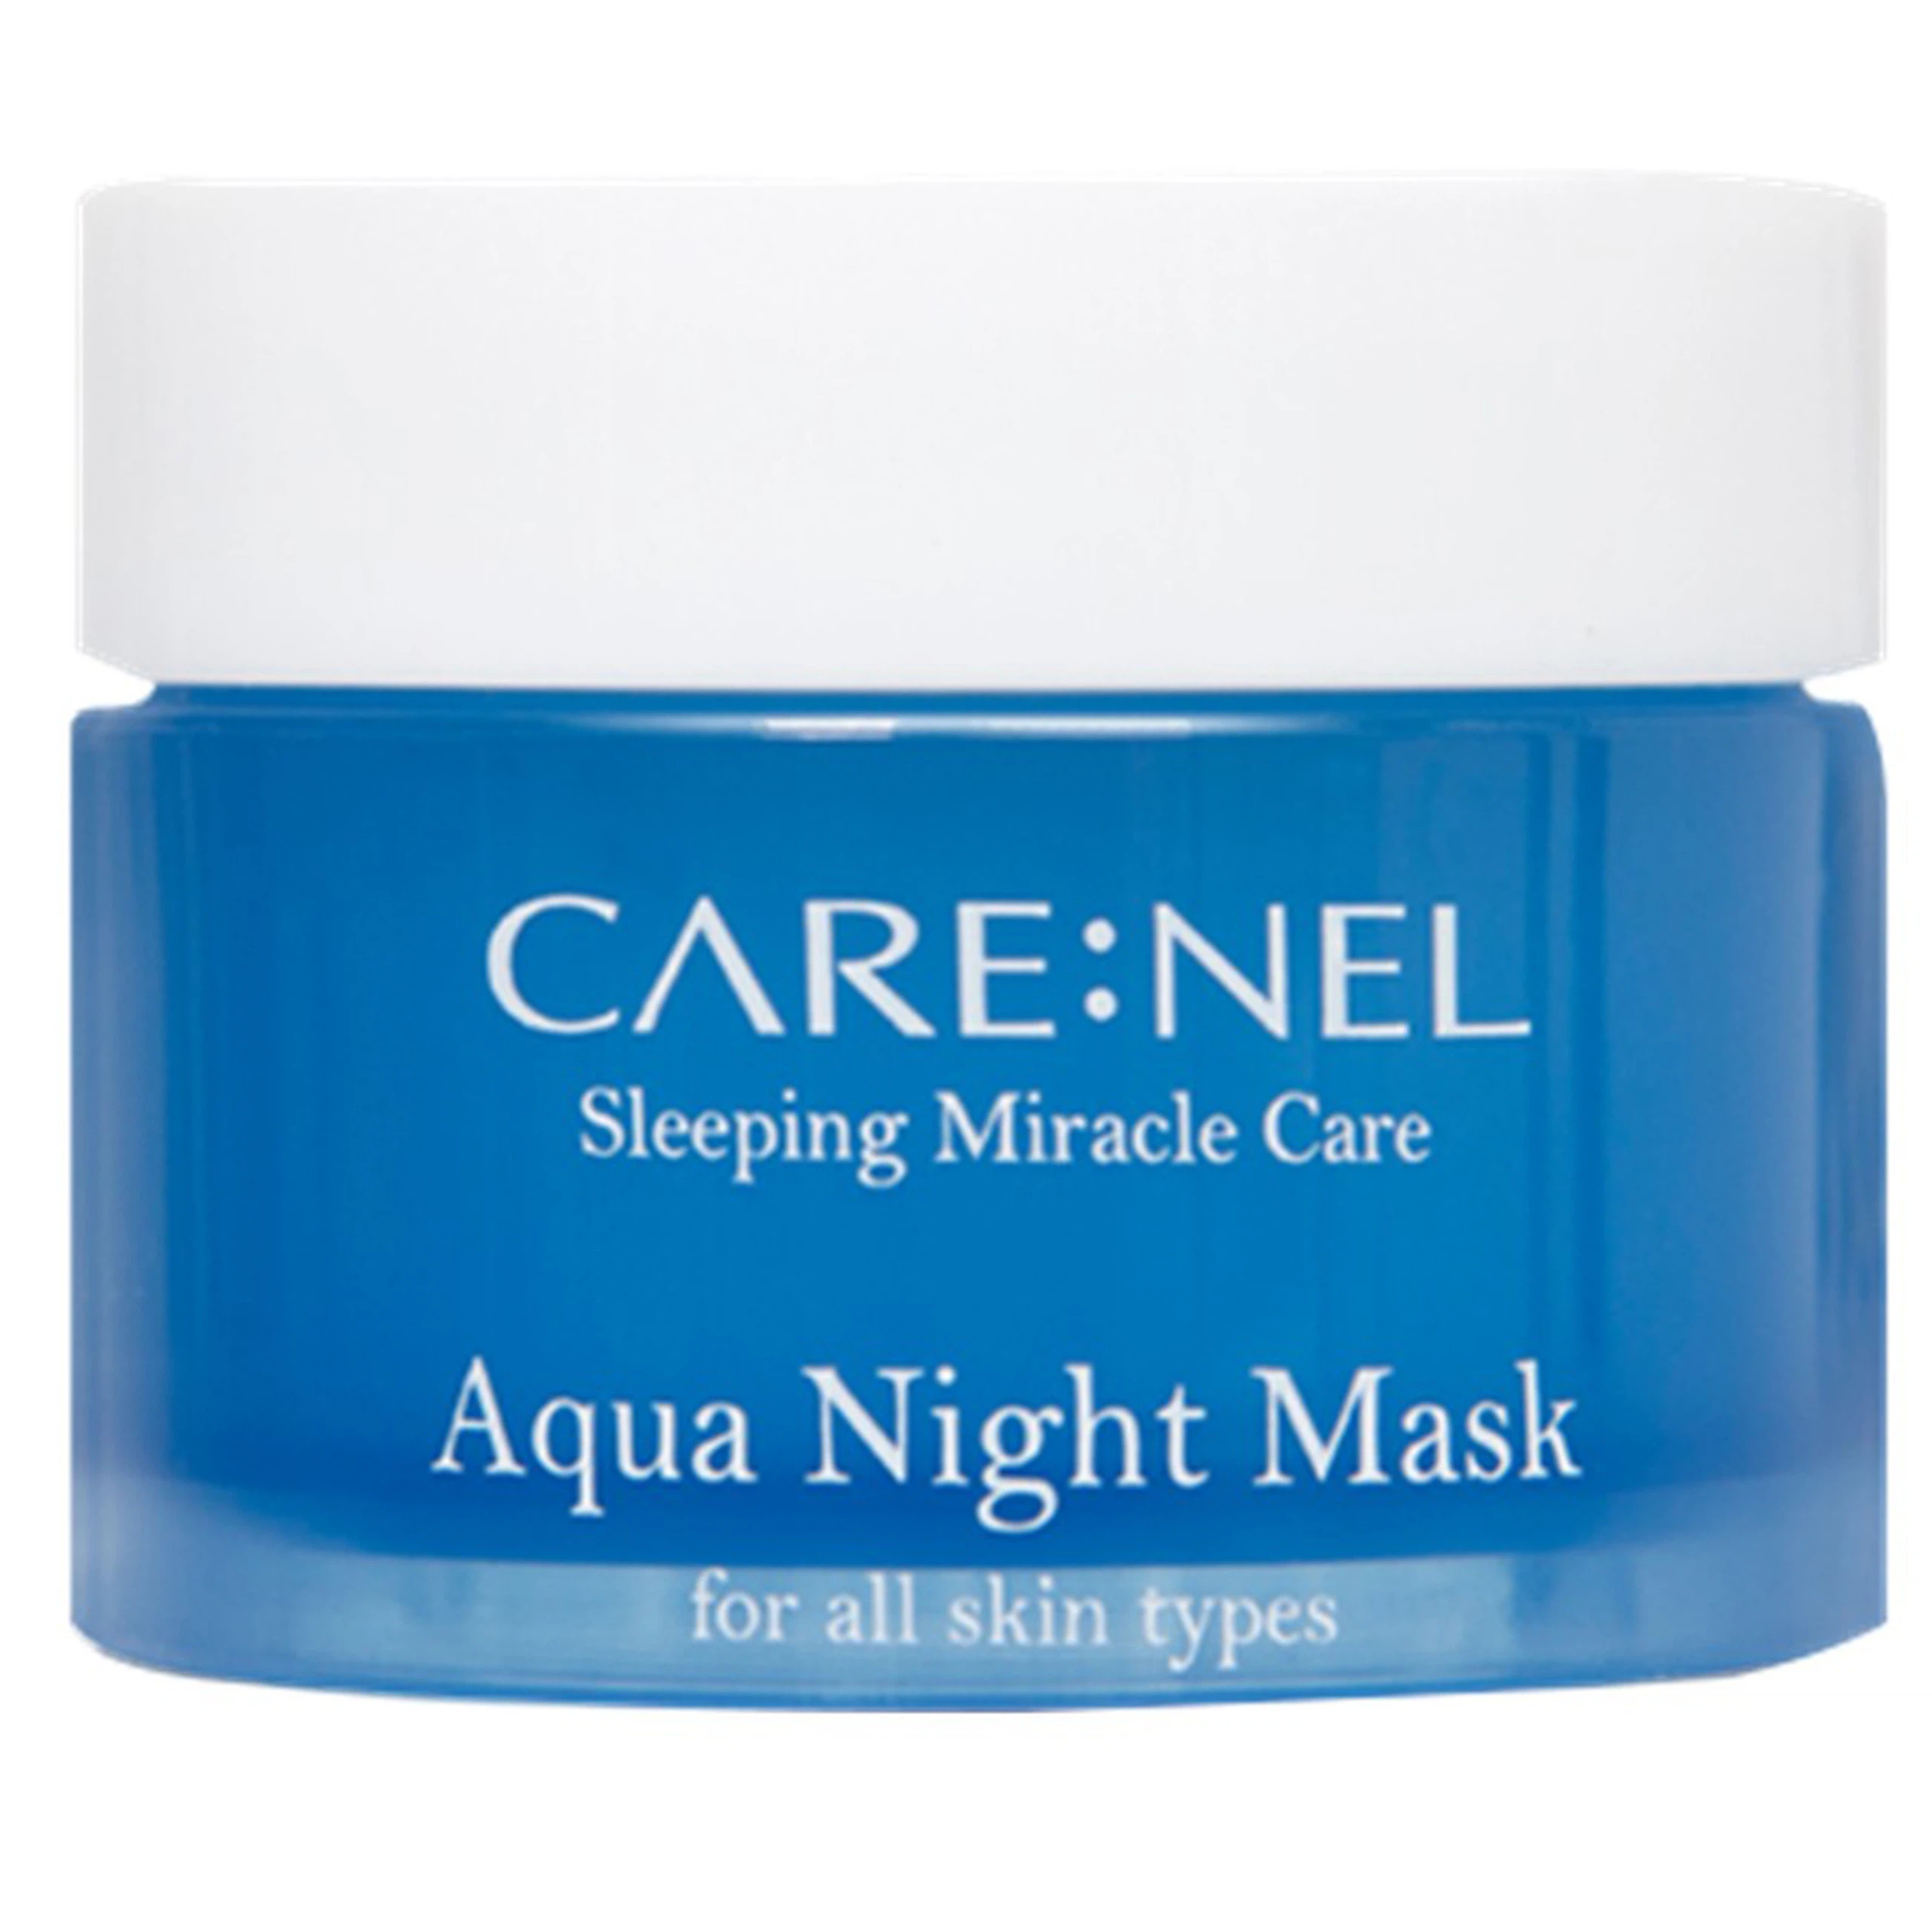 Mặt nạ ngủ mặt dạng gel Care:Nel Aqua Night Mask dưỡng ẩm cho da suốt 8 giờ (15ml)